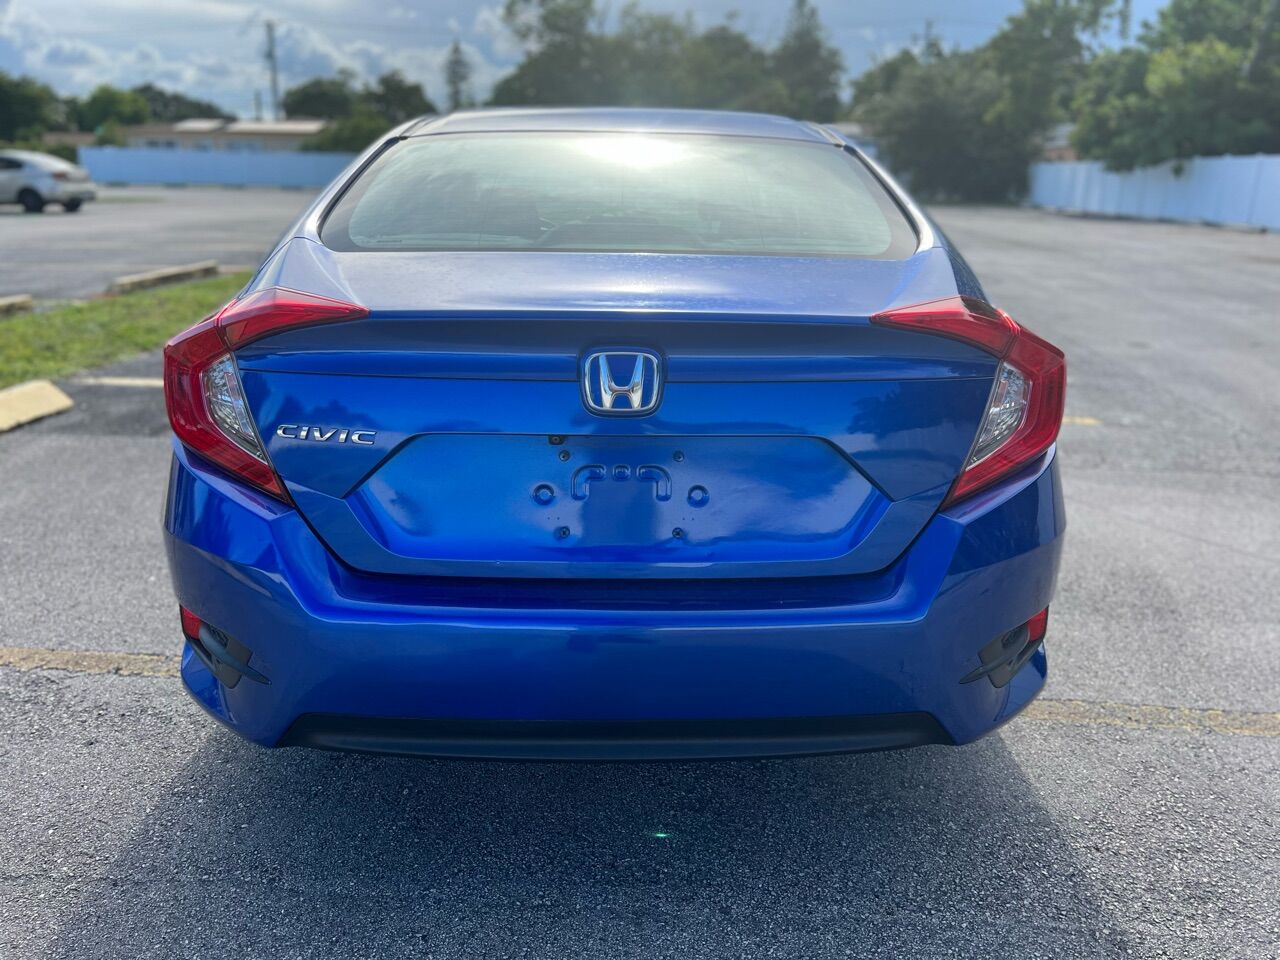 2018 Honda Civic Sedan - $13,999